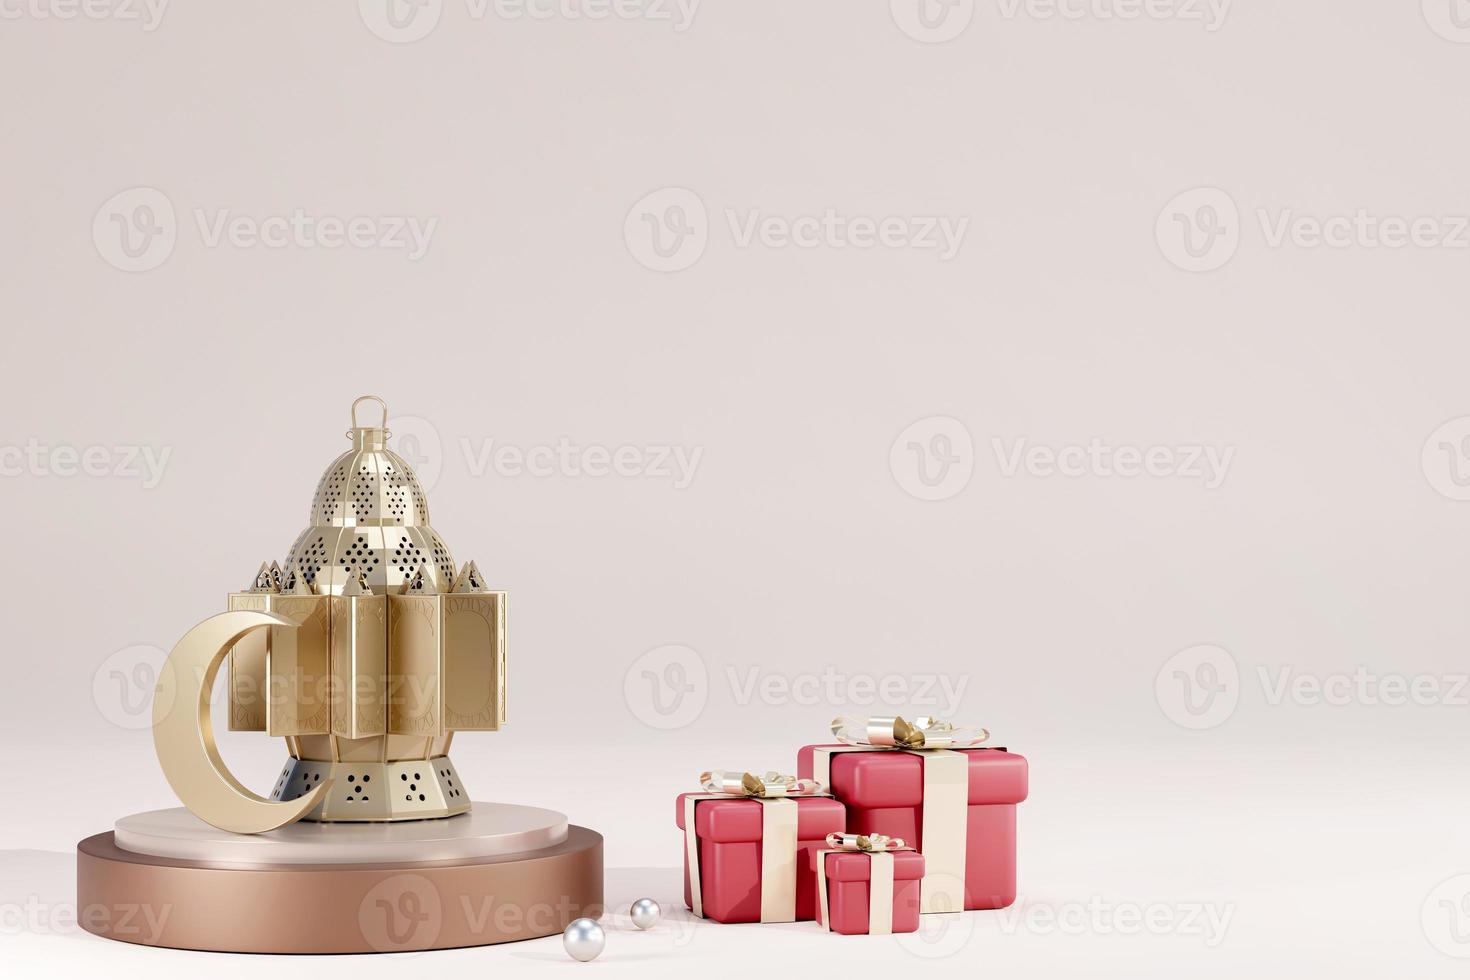 ramadan kareem islamischer grußhintergrund mit realistischem 3d-goldenem halbmond, geschenkbox und laterne. kreatives Design Grußkarte, Banner, Poster. traditioneller islamischer heiliger feiertag, 3d-rendering foto